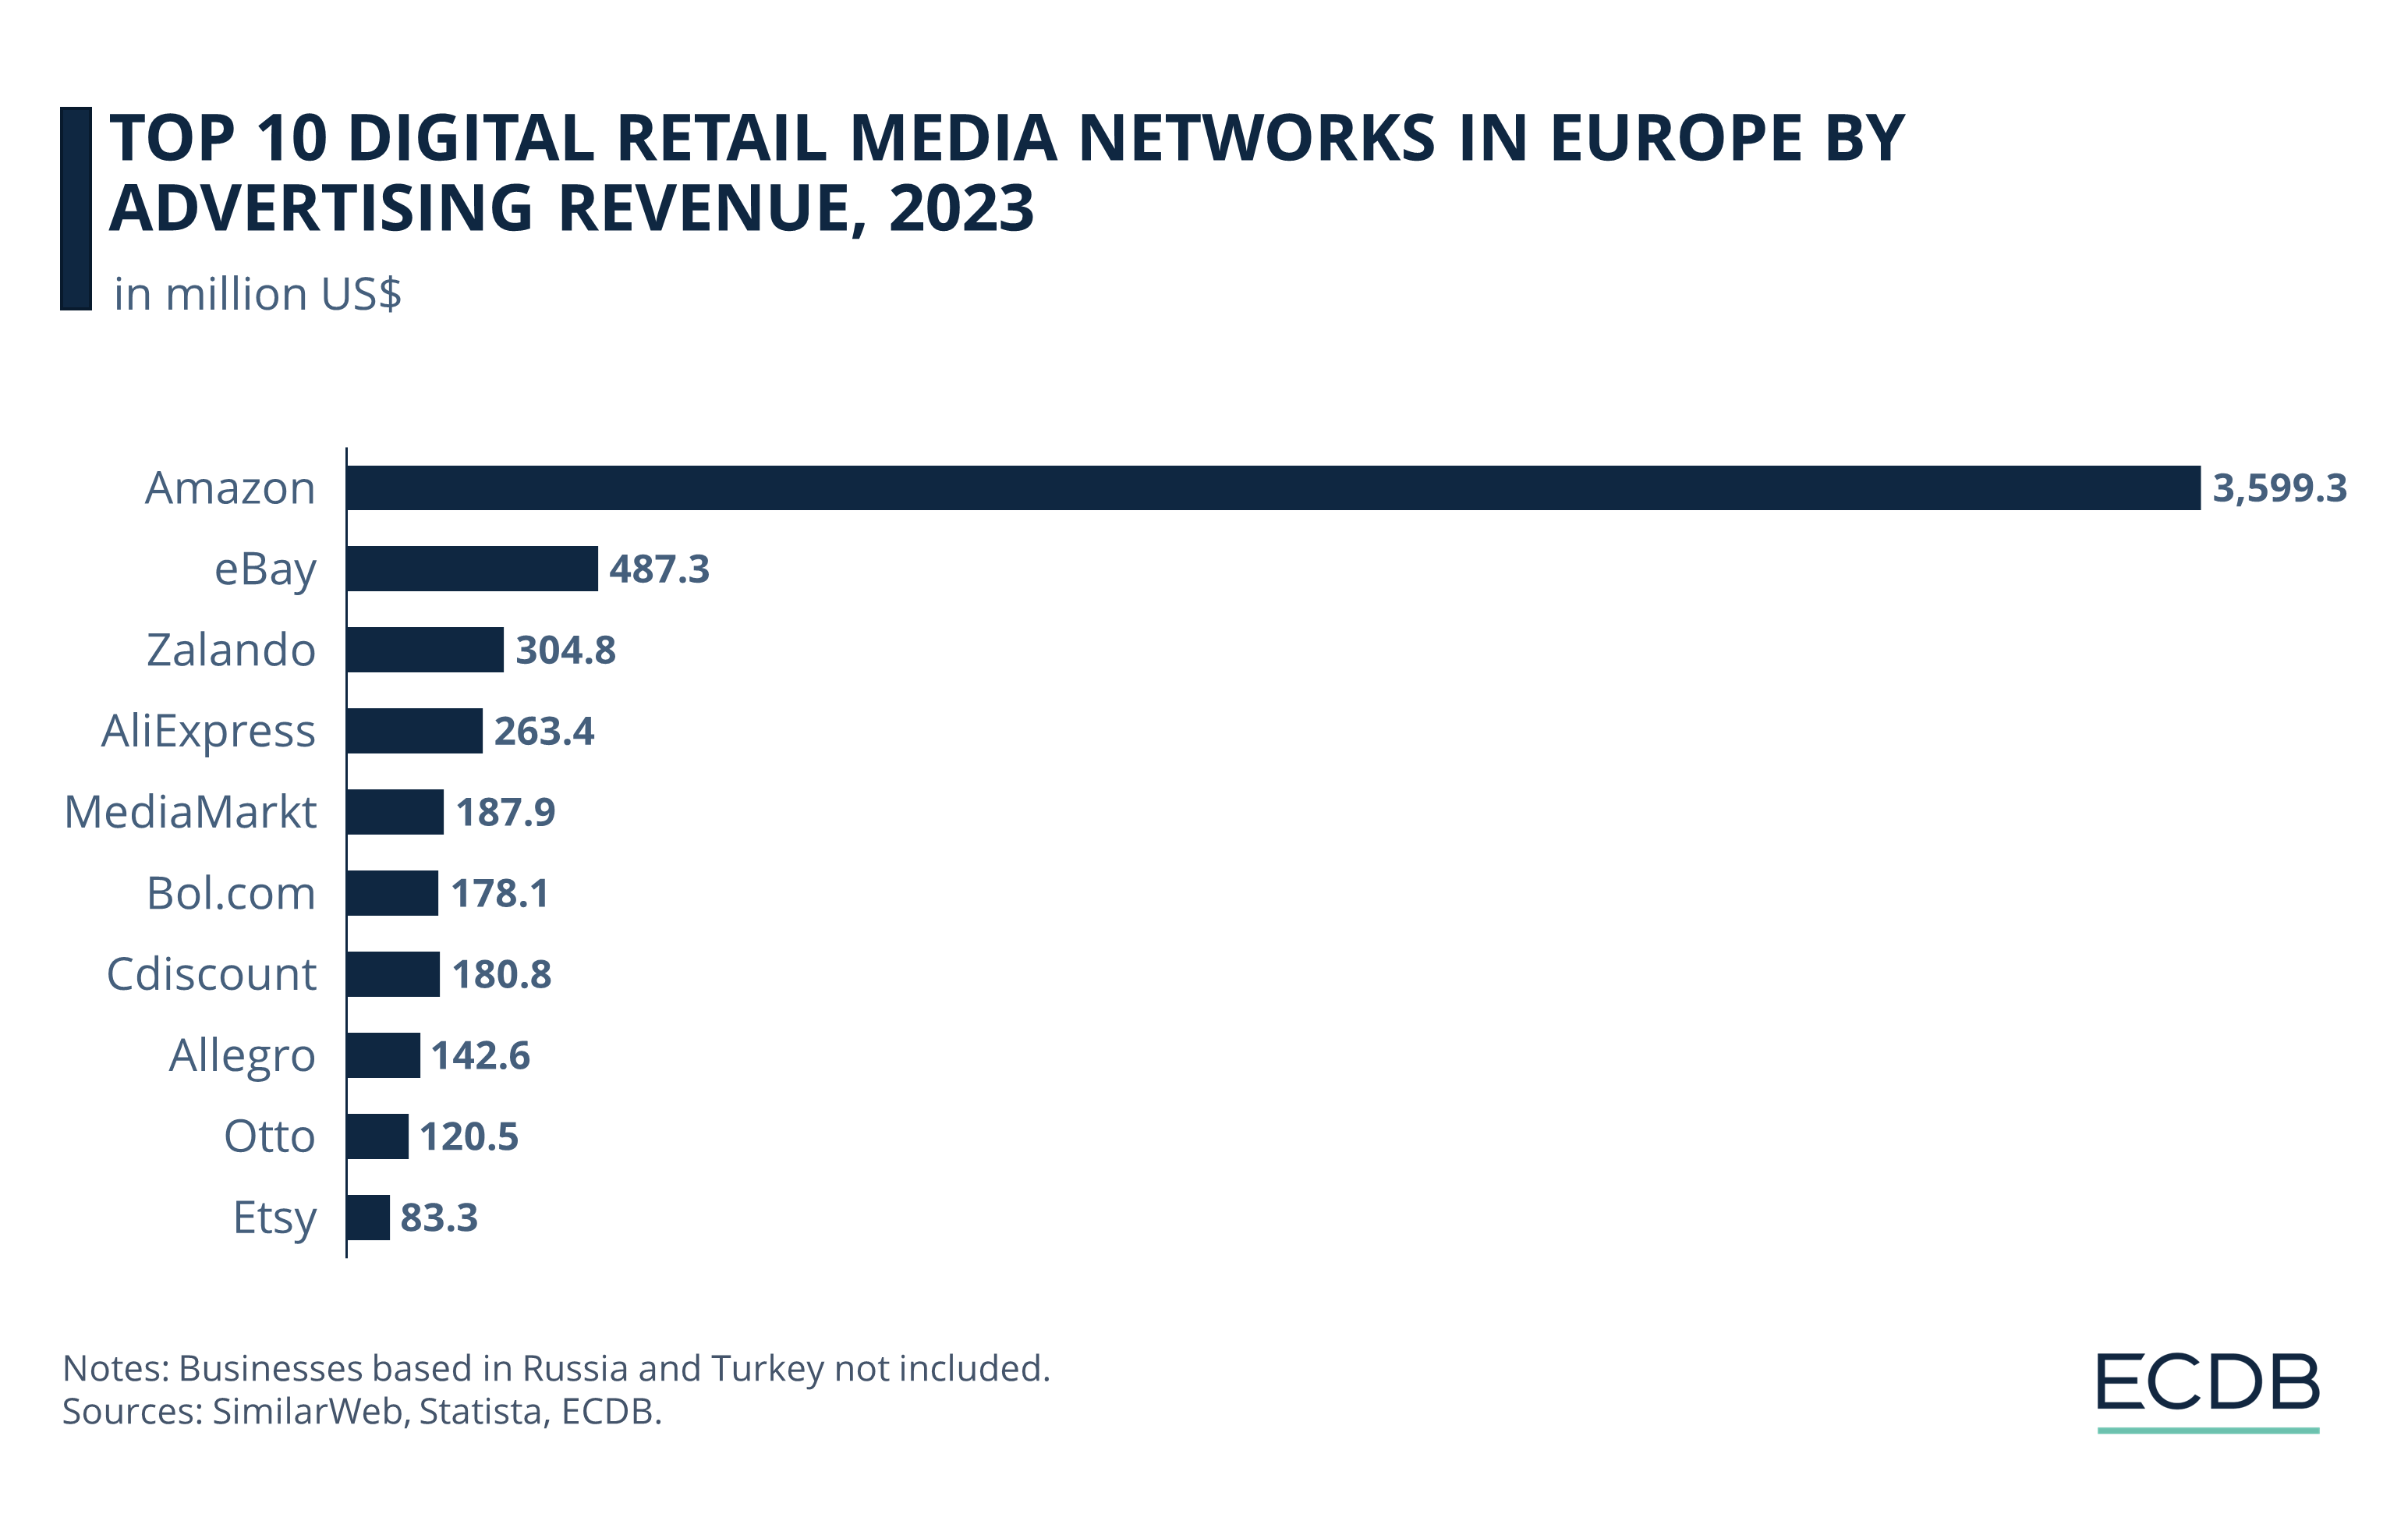 Top 10 Digital Retail Media Networks in Europe by Advertising Revenue, 2023